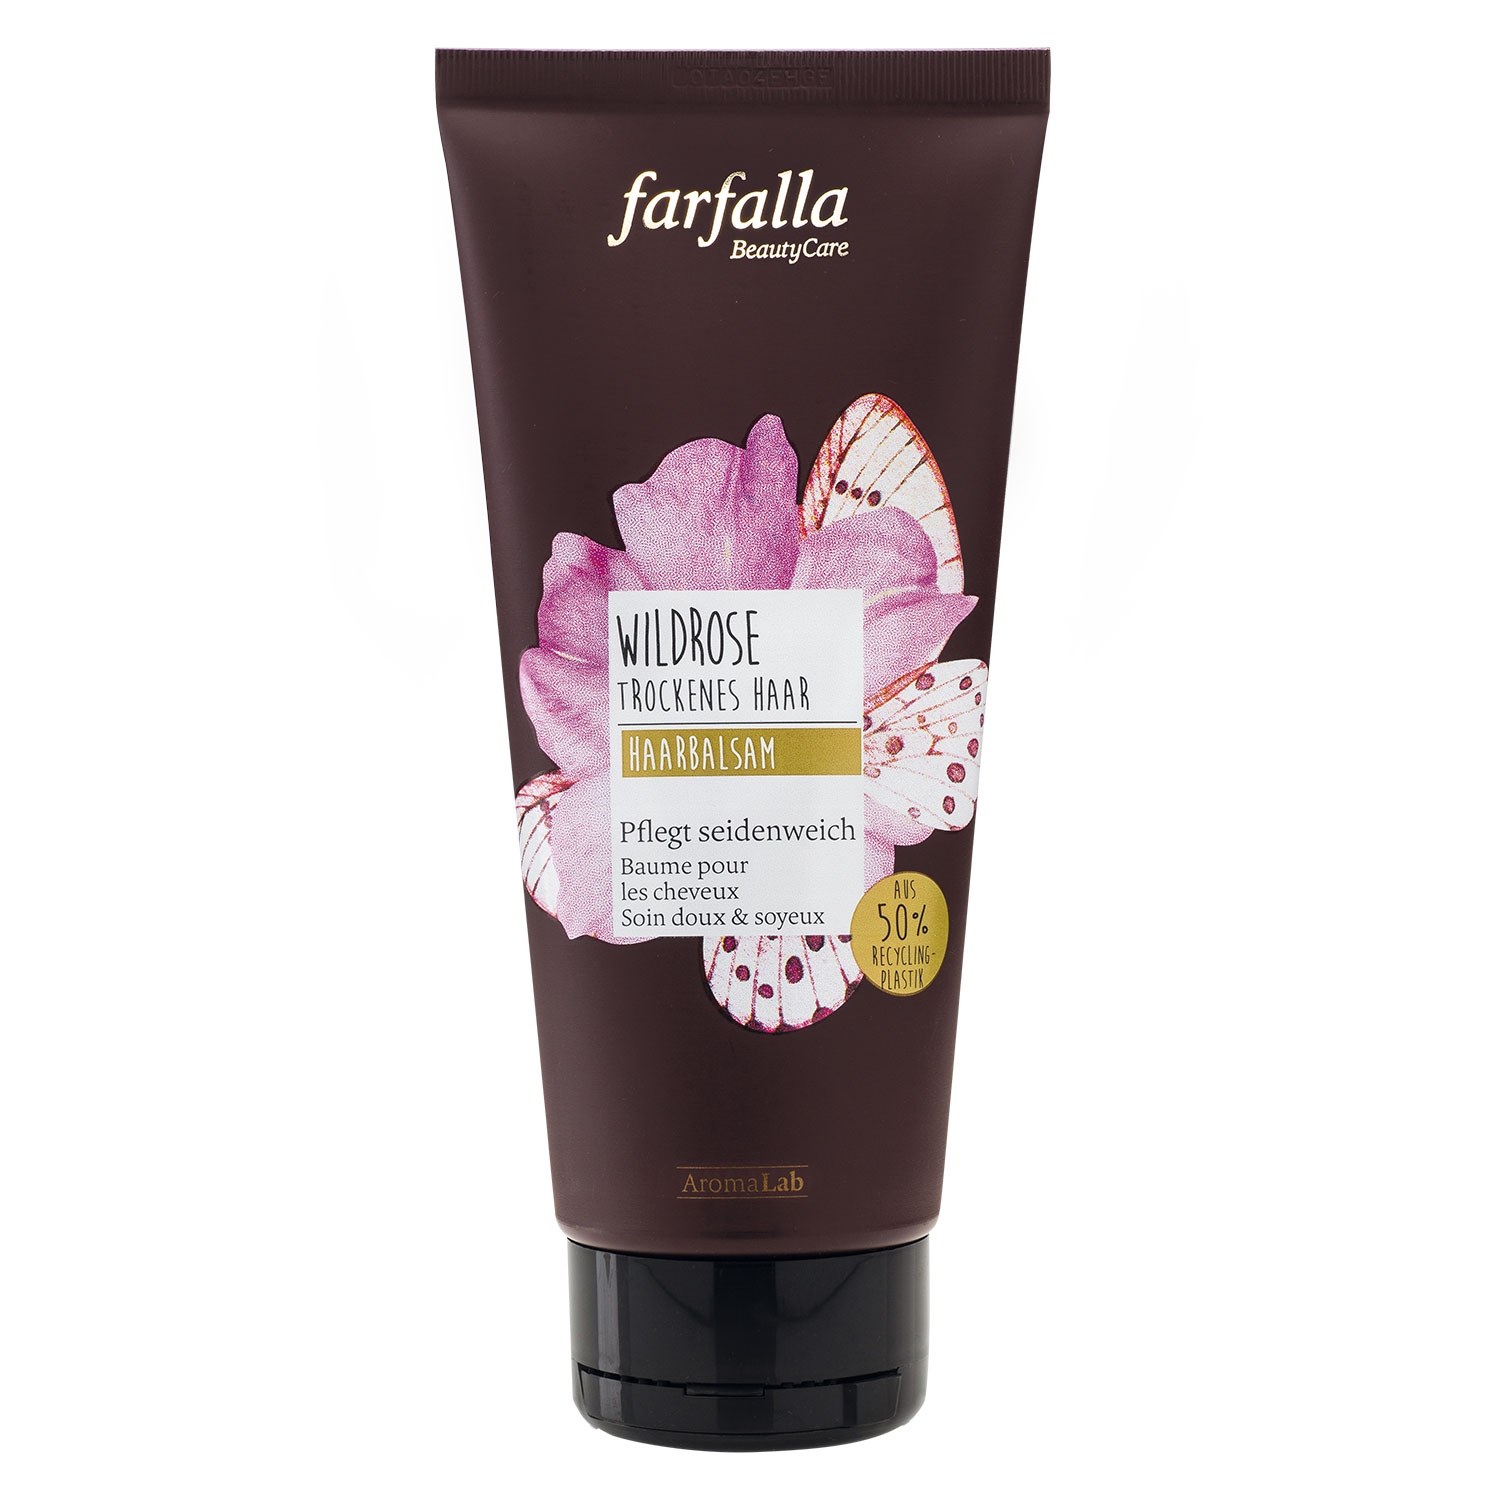 Produktbild von Farfalla Hair Styling - Wildrose Haarbalsam